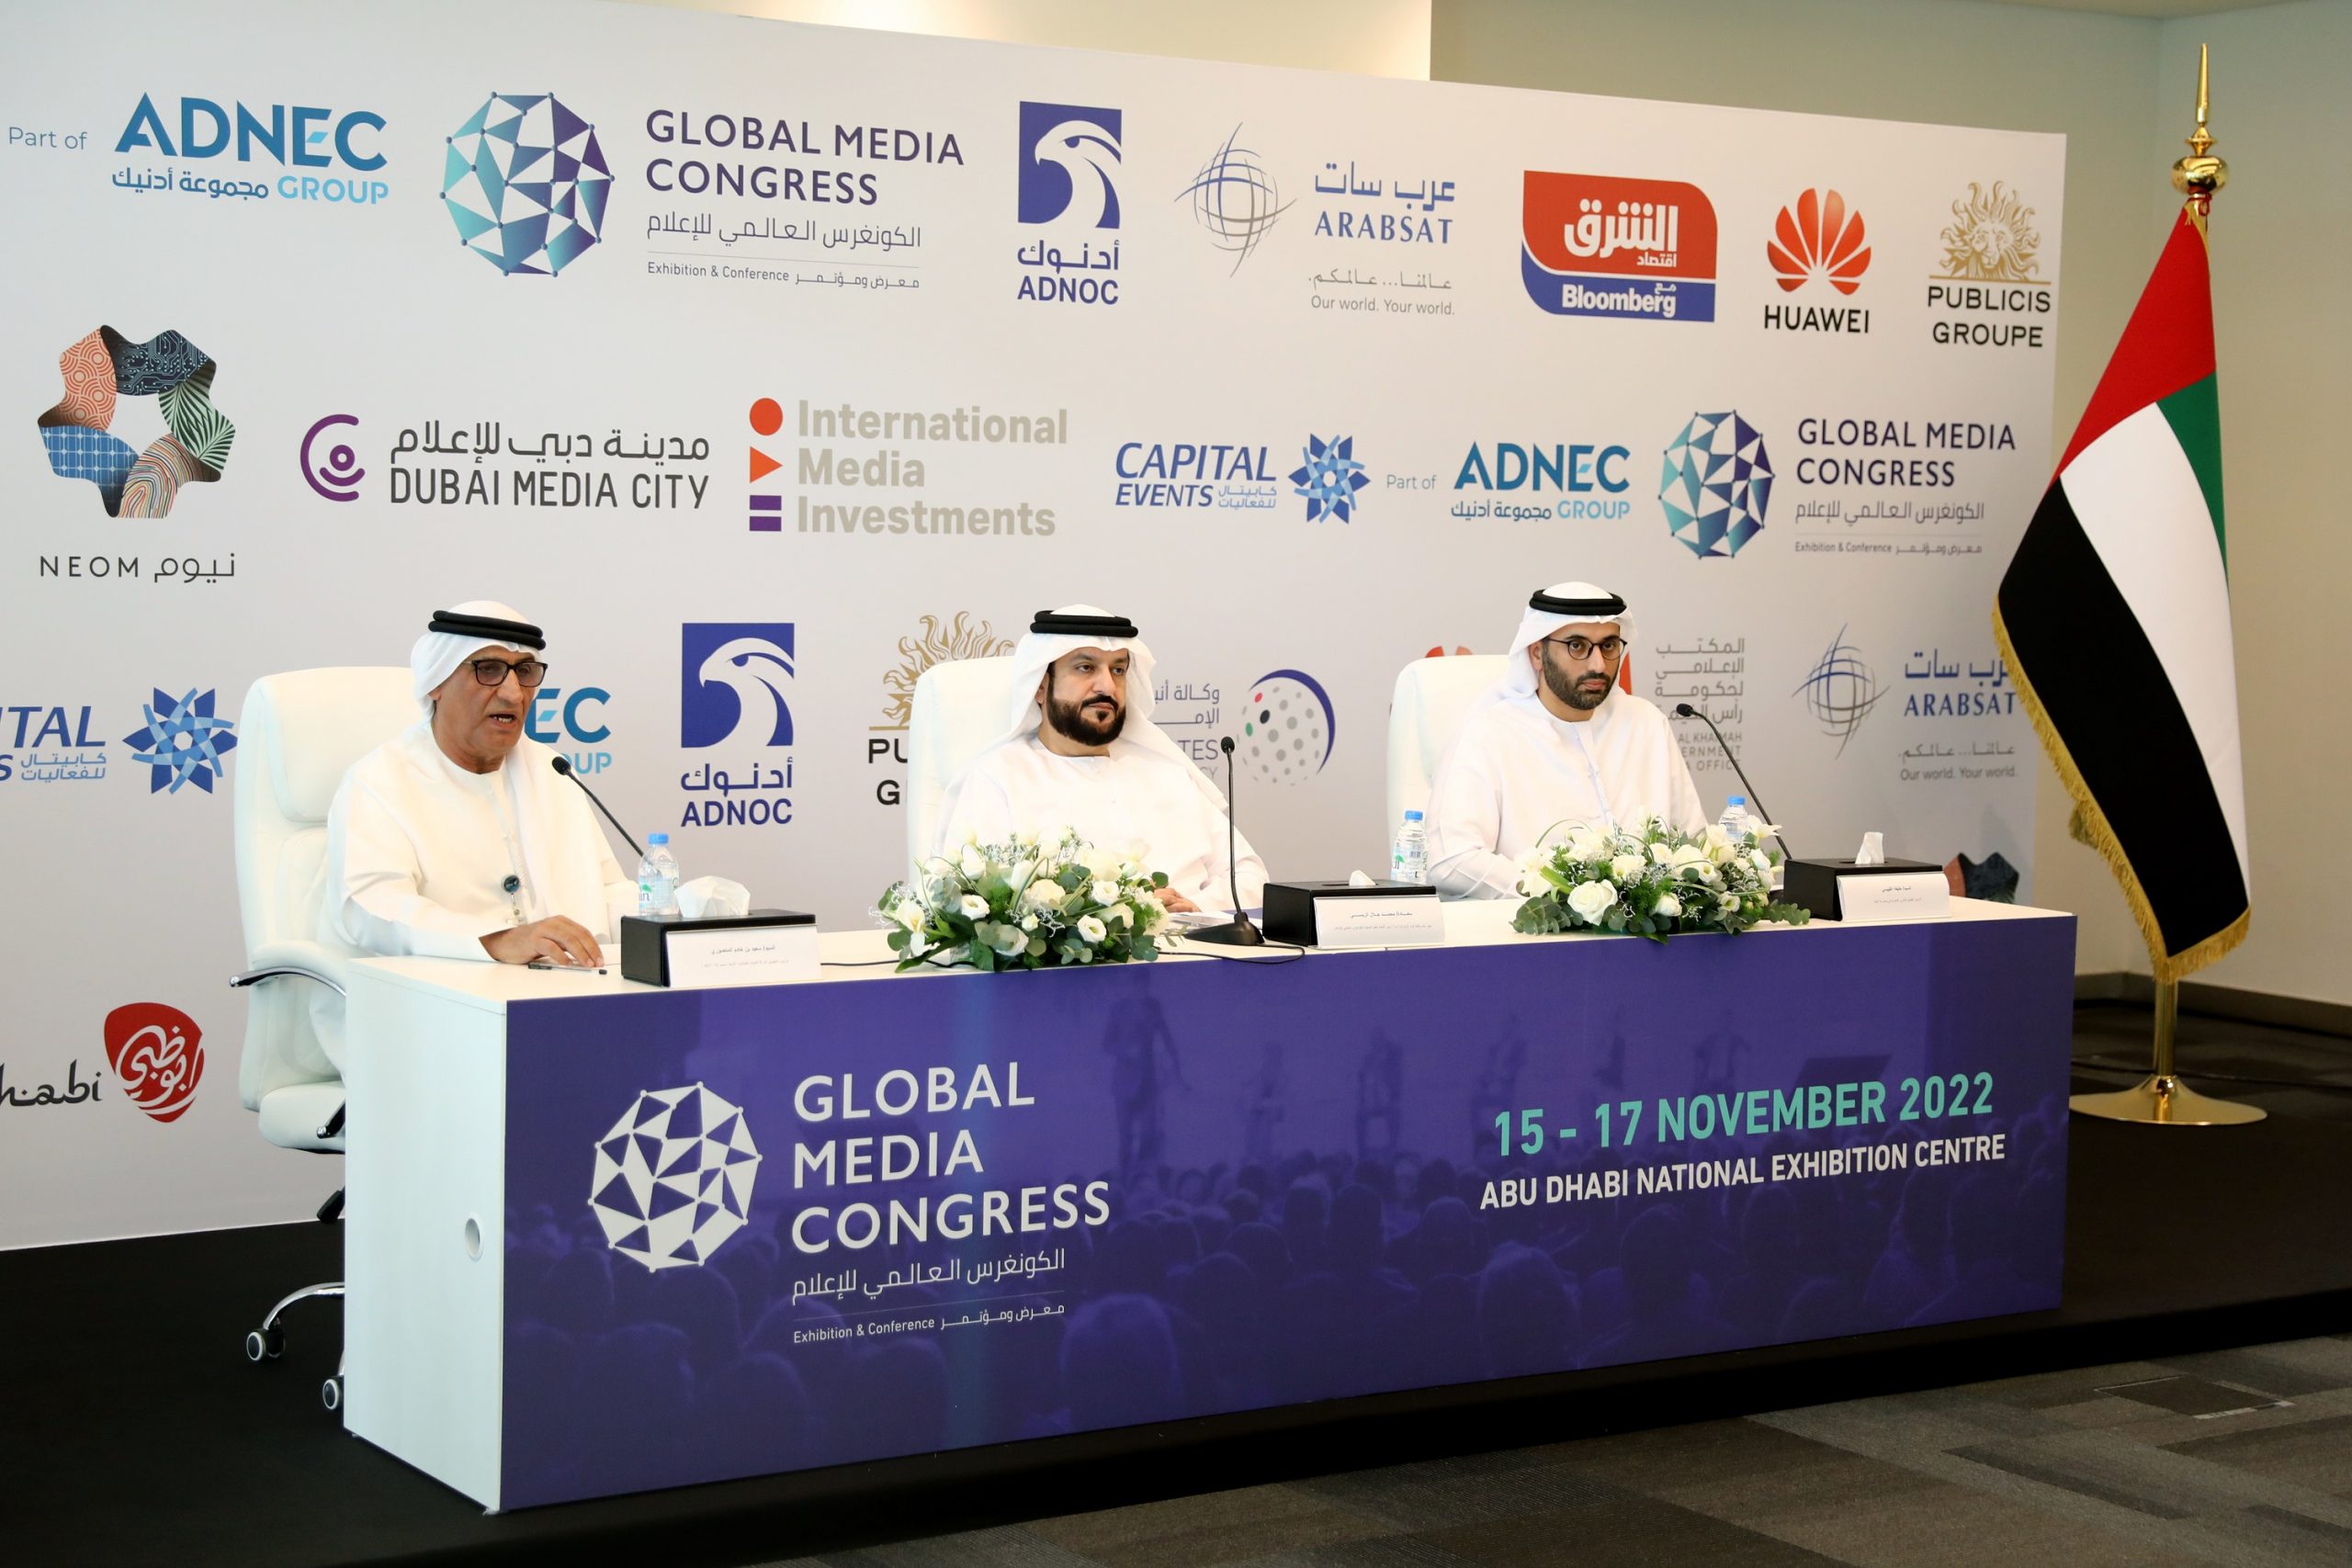 UAE Global Media Congress